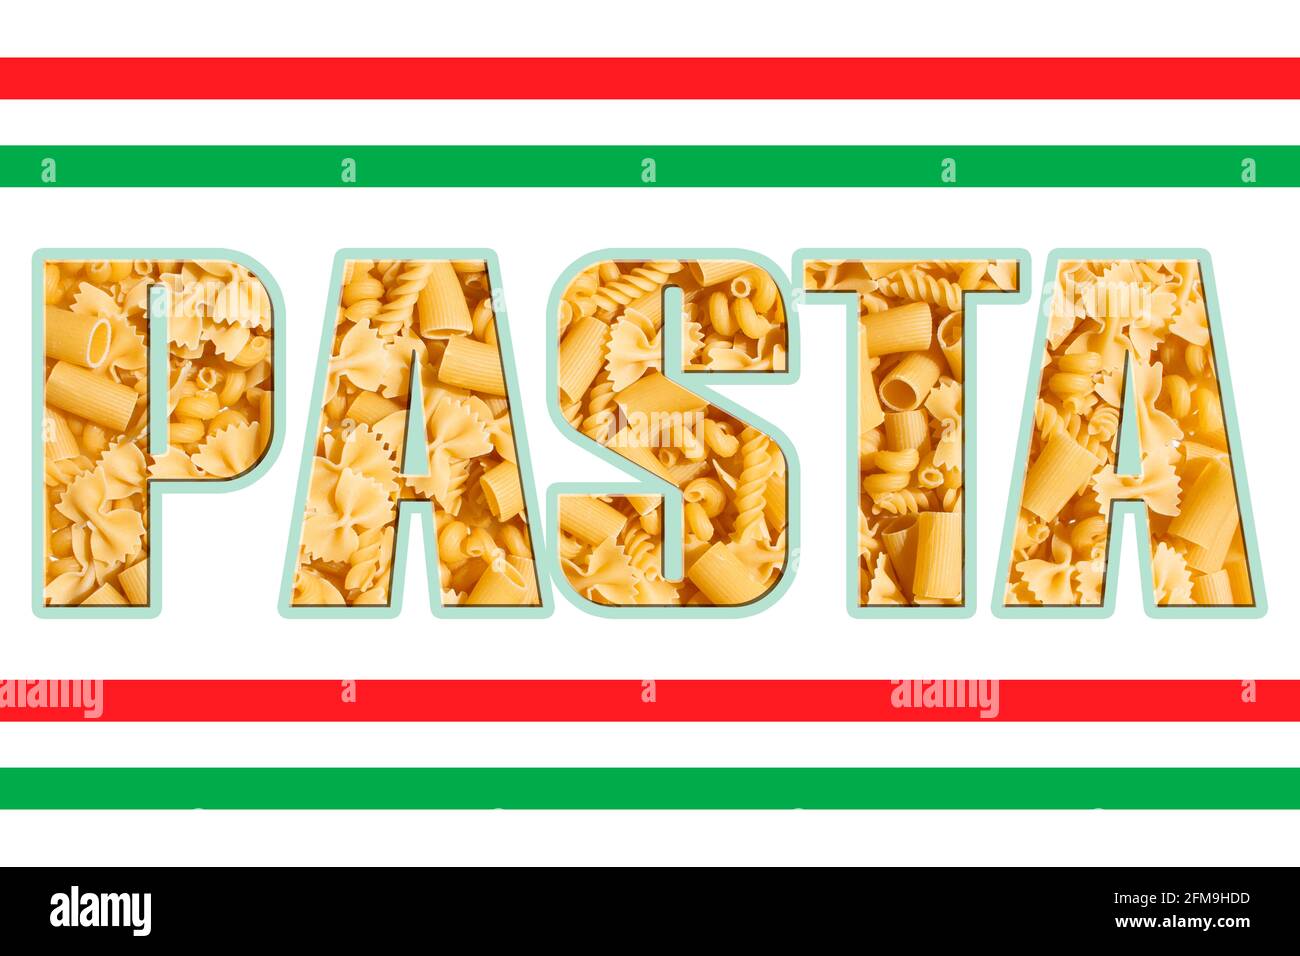 la parola pasta è scritta in caratteri di testo grandi e spessi in grassetto Con bandiera italiana strisce di cibo sfondo Foto Stock